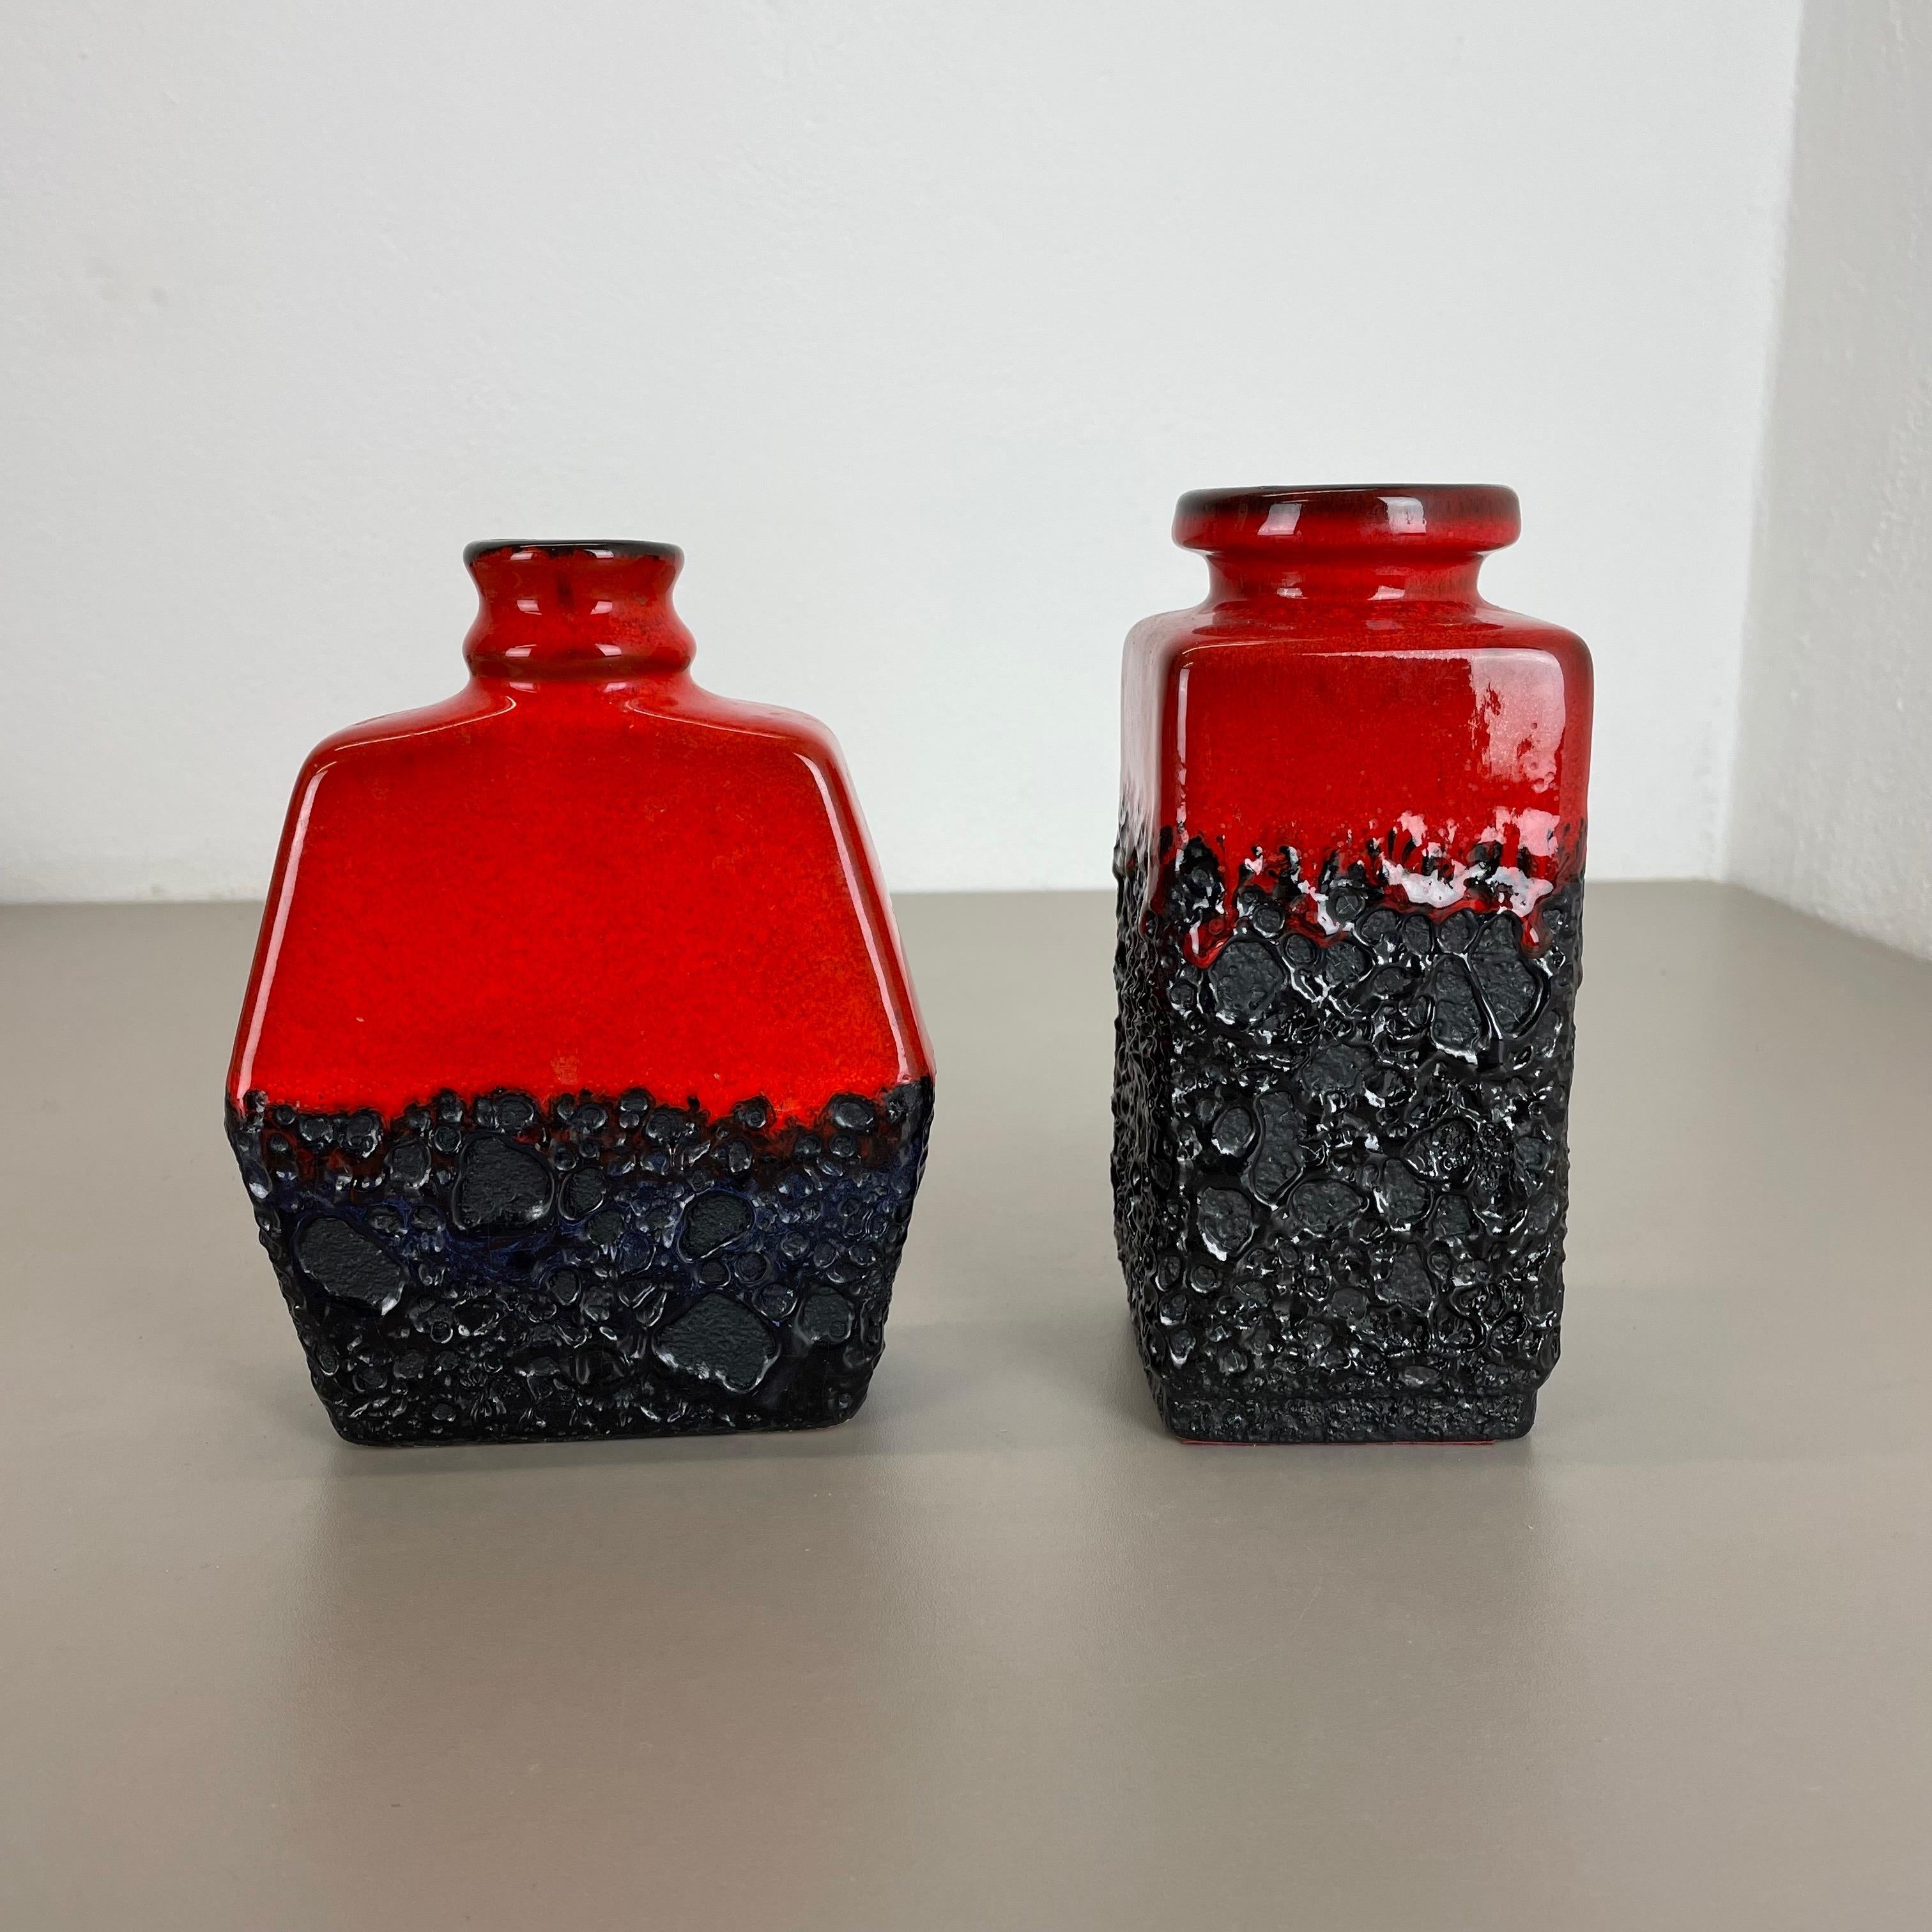 Artikel:

Satz von zwei fetten Lavakunstvasen.




Produzent:

Jopeko-Keramik, Deutschland



Jahrzehnt:

1970s




Diese originalen Vintage-Vasen wurden in den 1970er Jahren in Deutschland hergestellt. Sie ist aus Keramik in fetter Lava-Optik